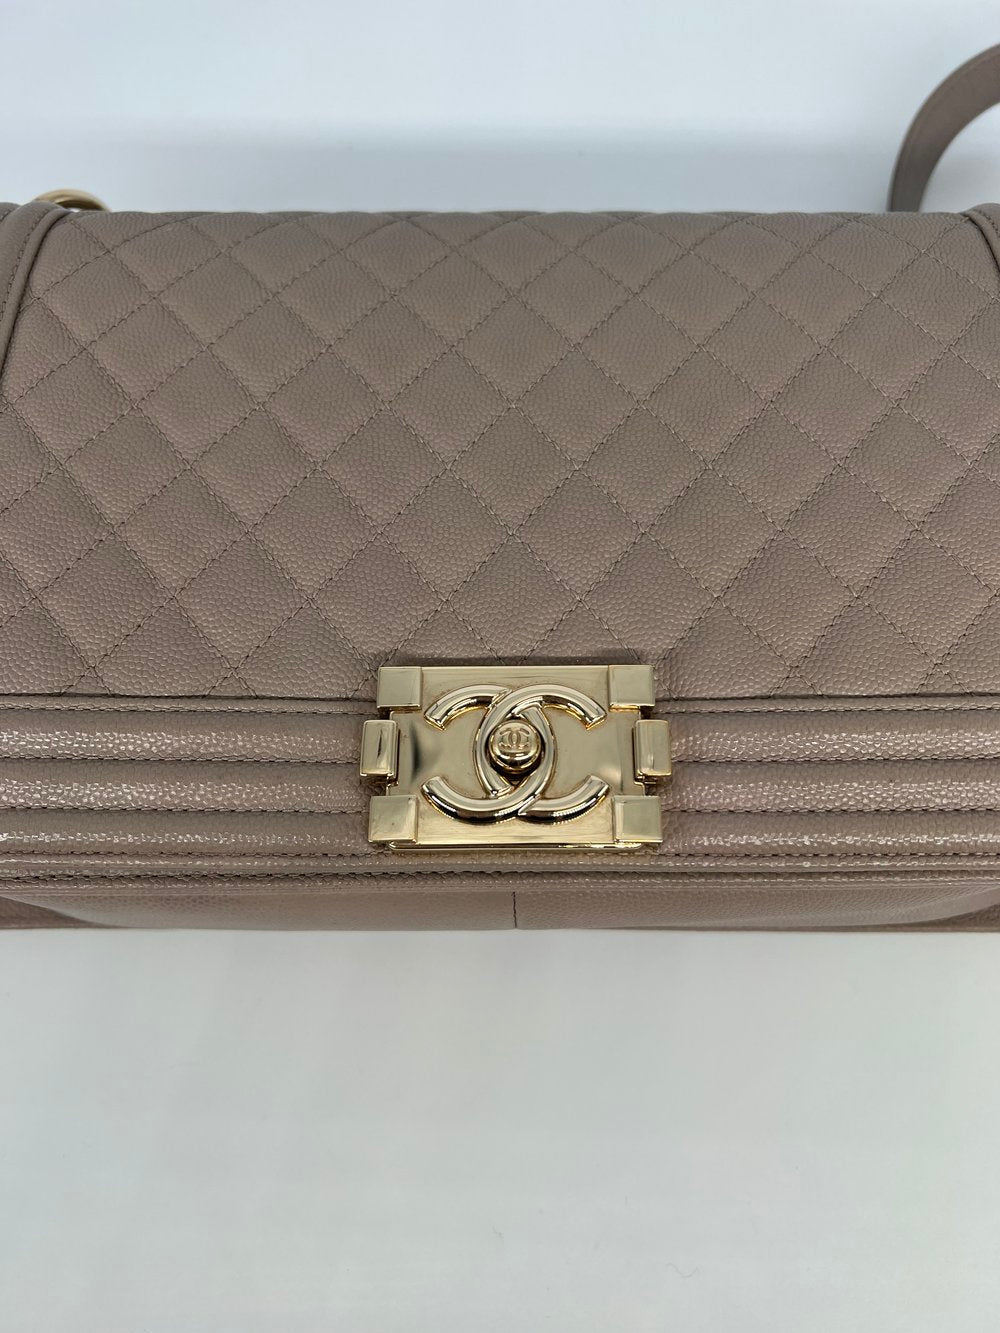 Chanel New Medium Boy Bag - Beige CGHW -SOLD